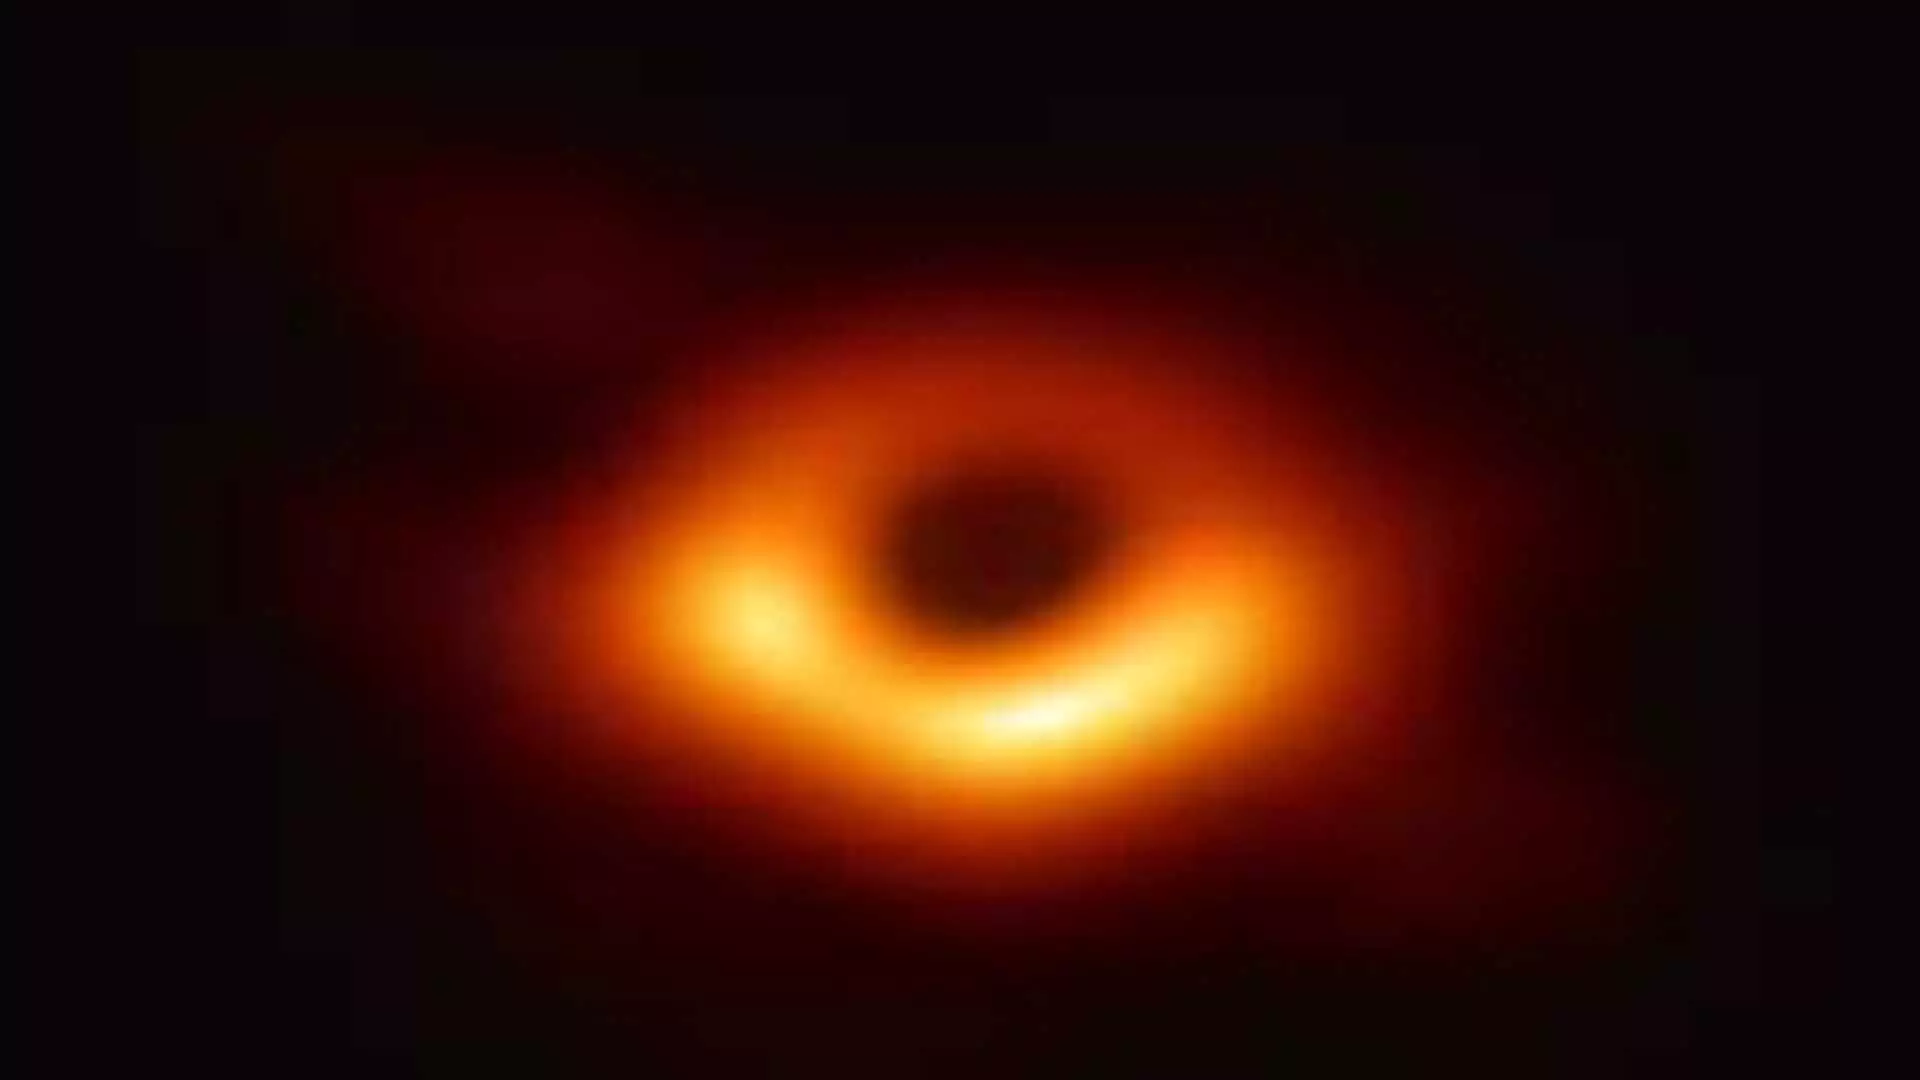 Study: आकाशगंगा के केंद्र में दुर्लभ मध्यम आकार का ब्लैक होल देखा गया